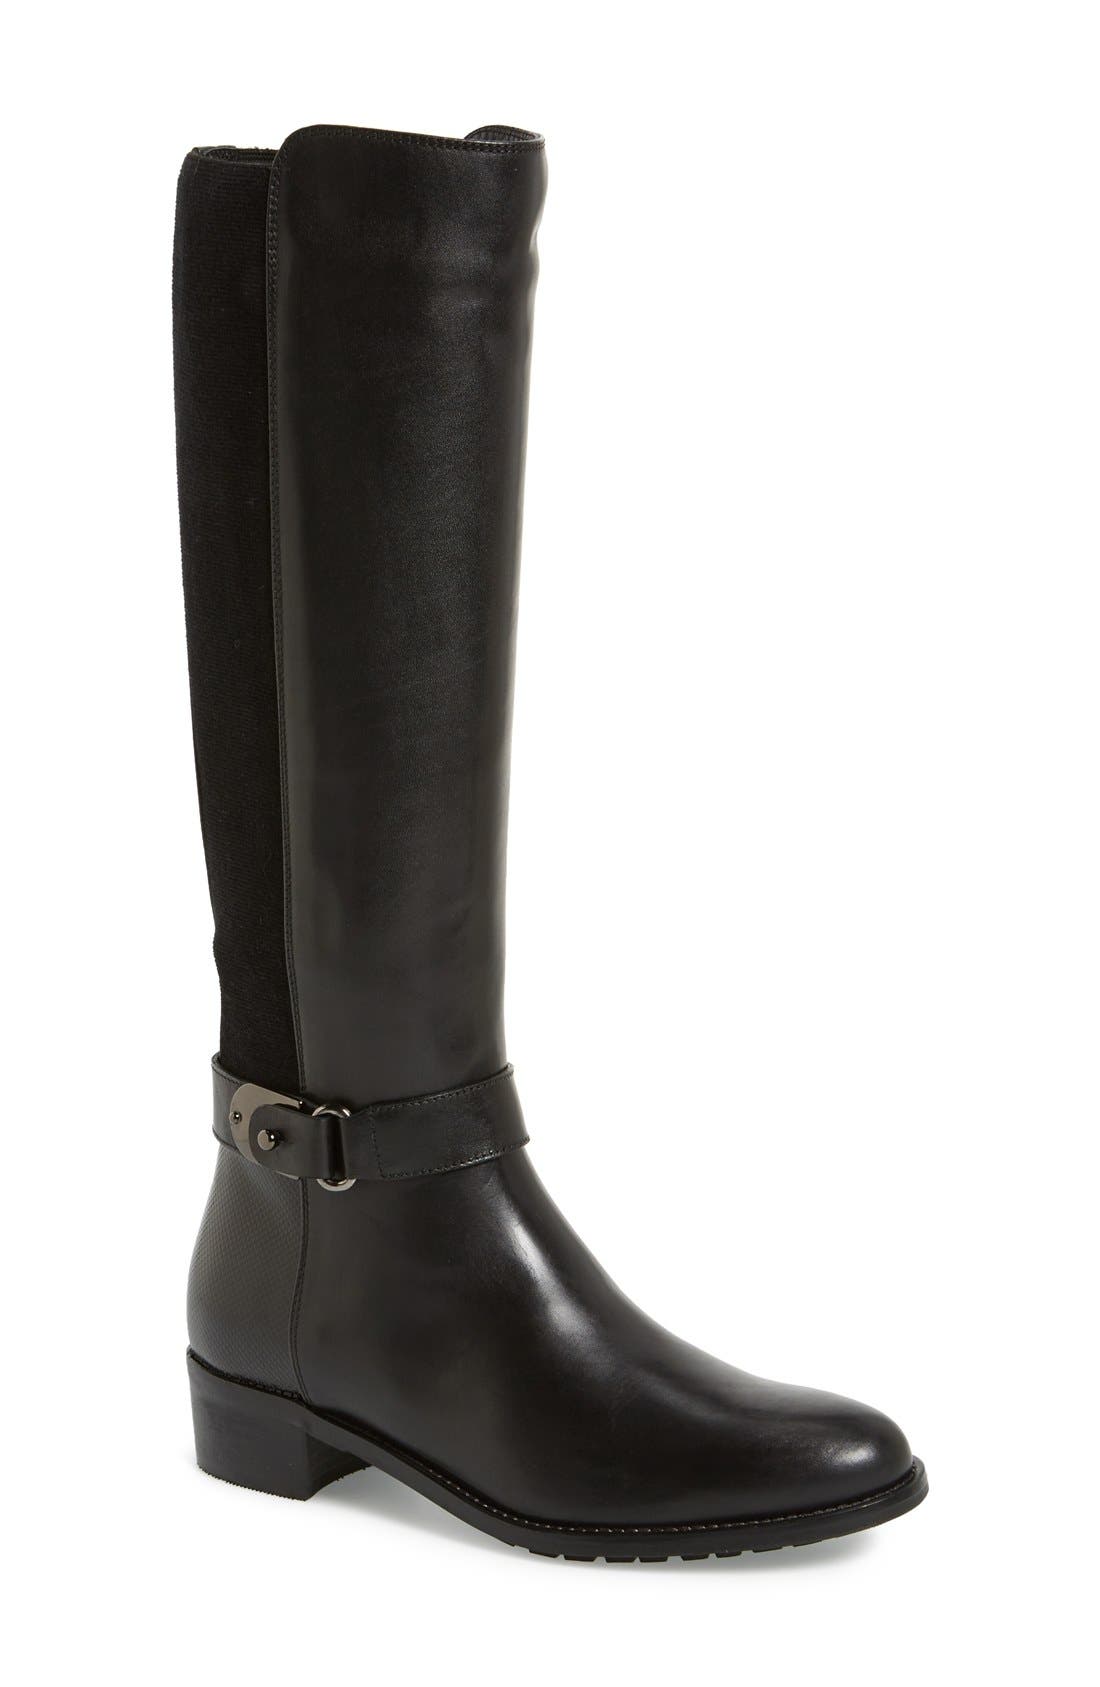 aquatalia wide calf boots